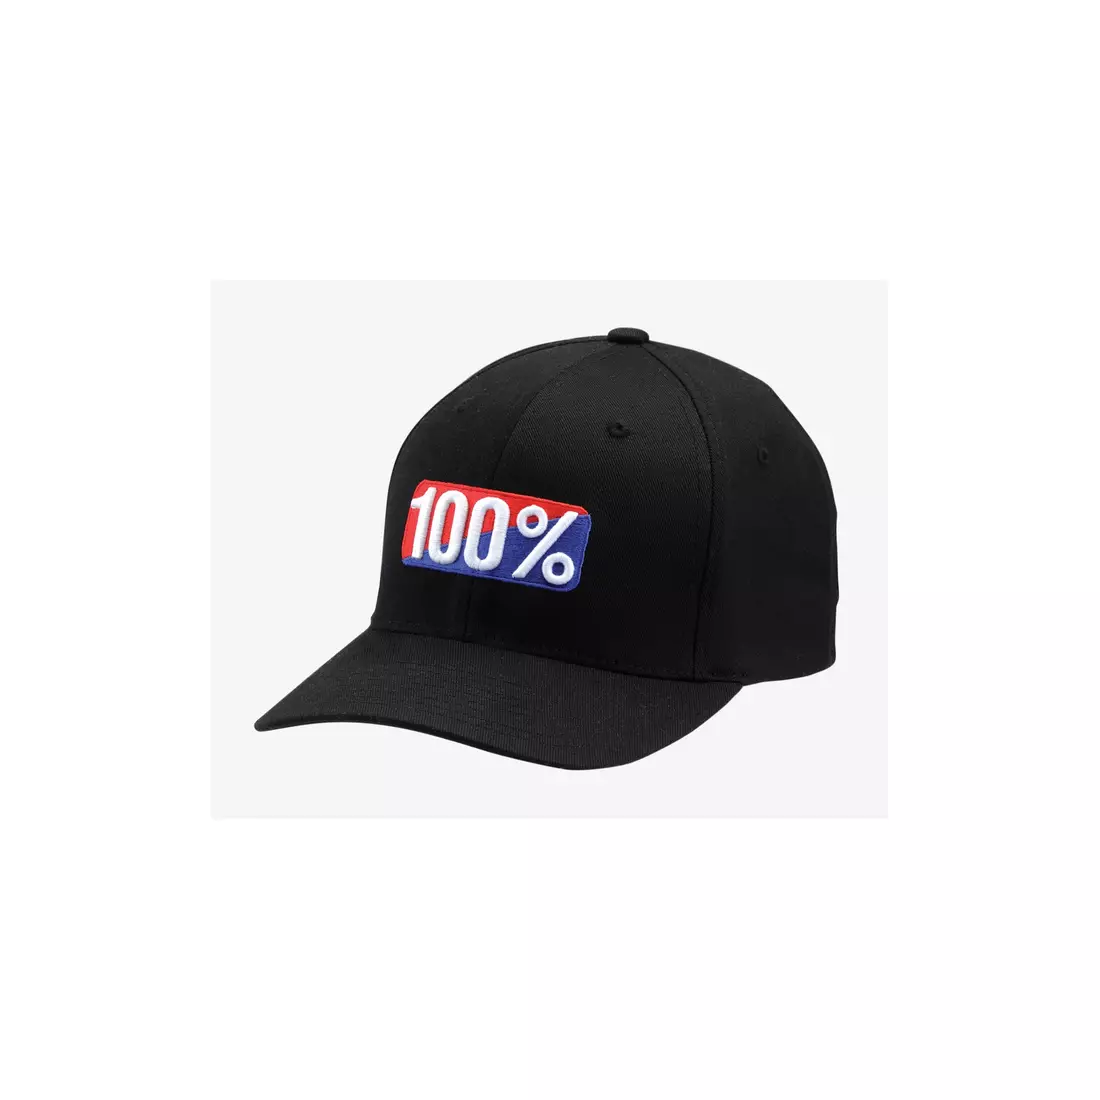 100% bejzbalová čiapka CLASSIC X-Fit flexfit hat black STO-20011-001-18